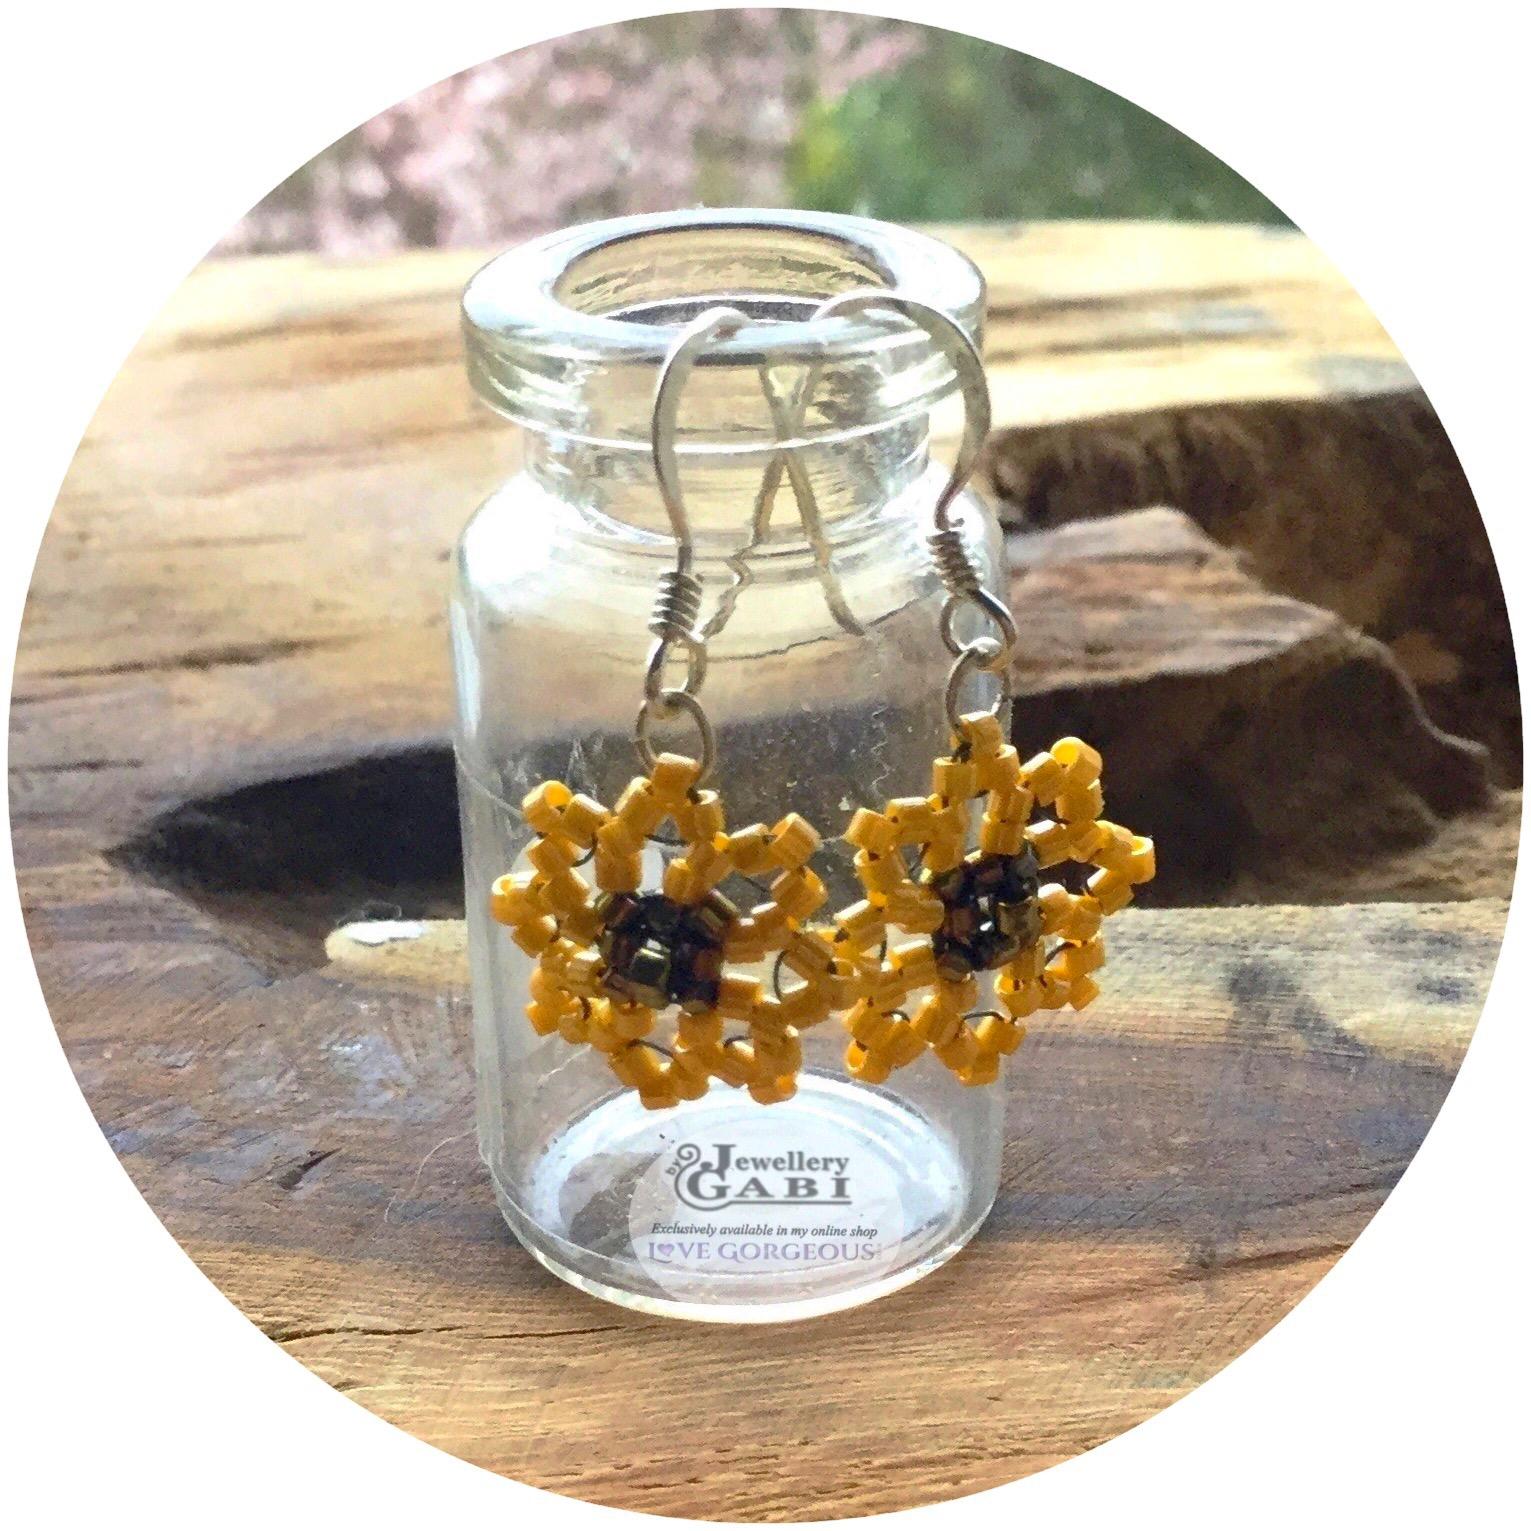 Jewellery by Gabi dinky beaded sunflower earring hanging on glass bottle